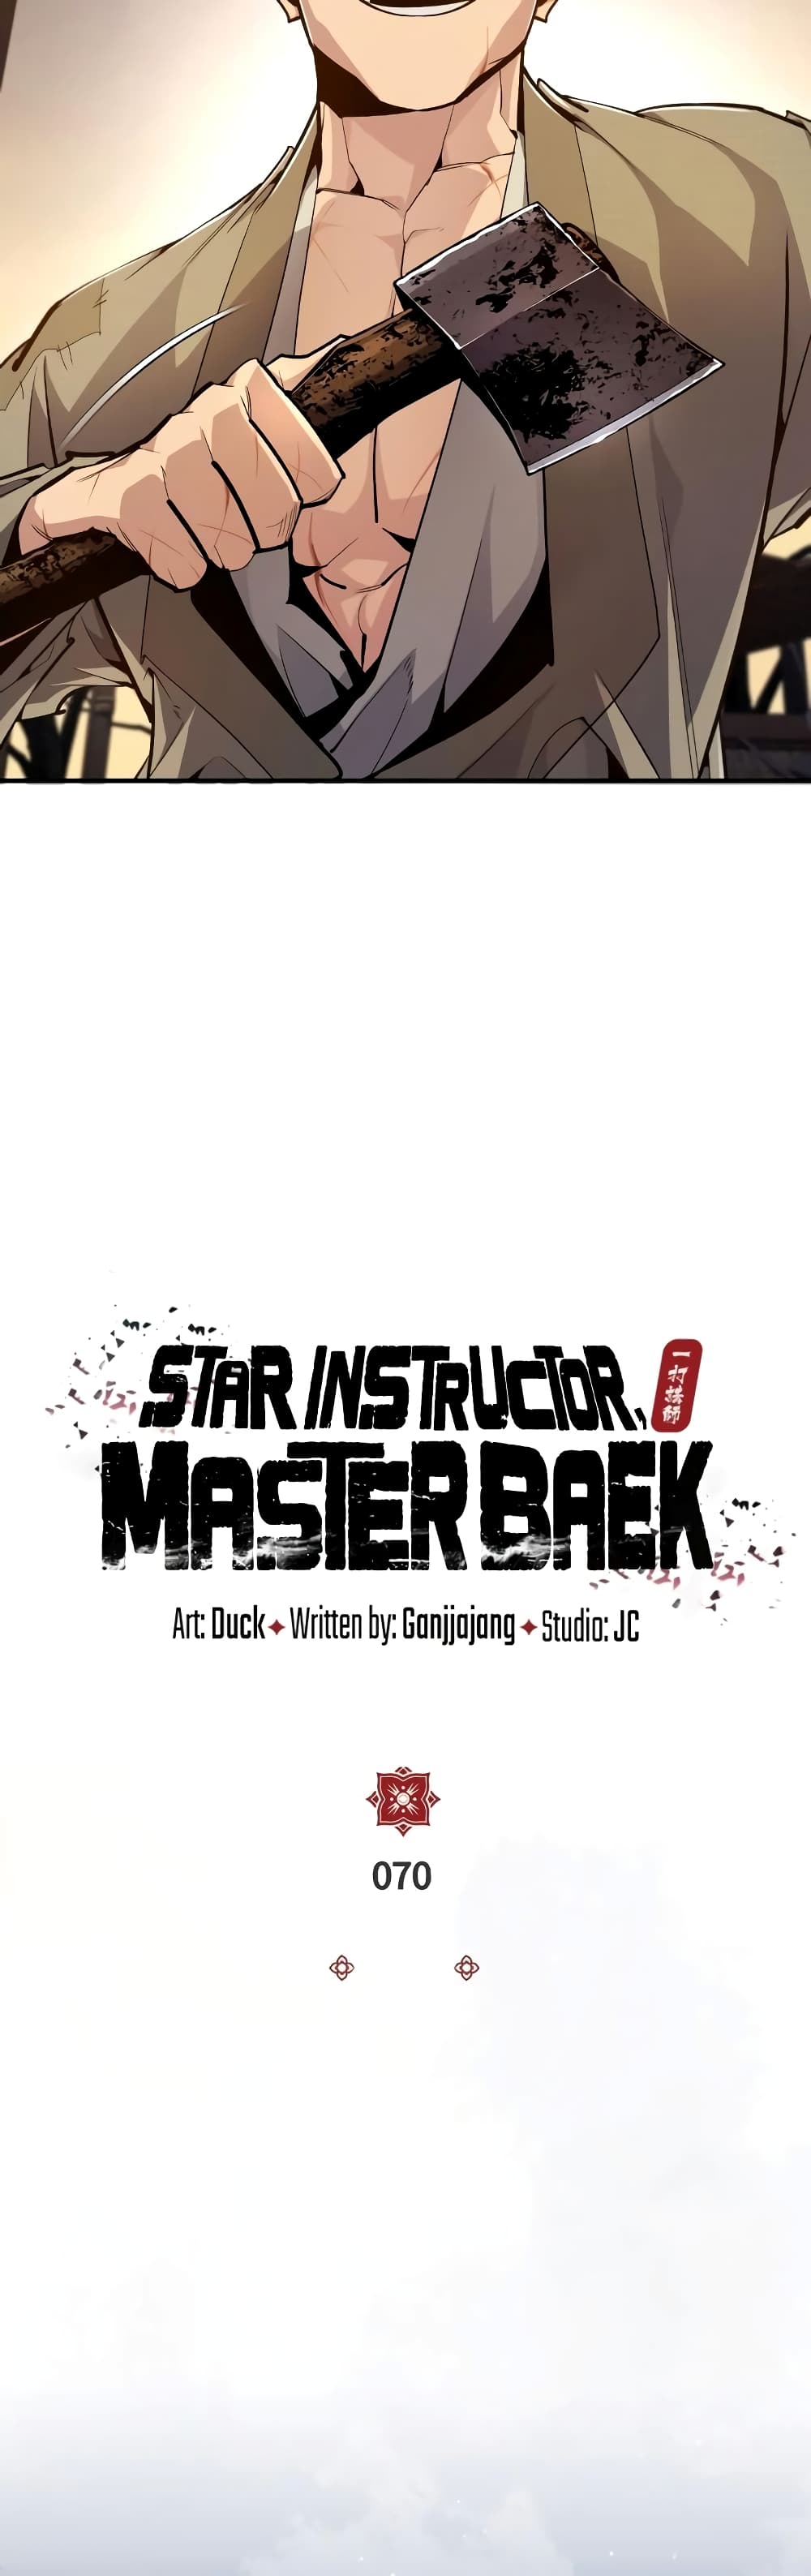 Star Instructor Master Baek 70-70